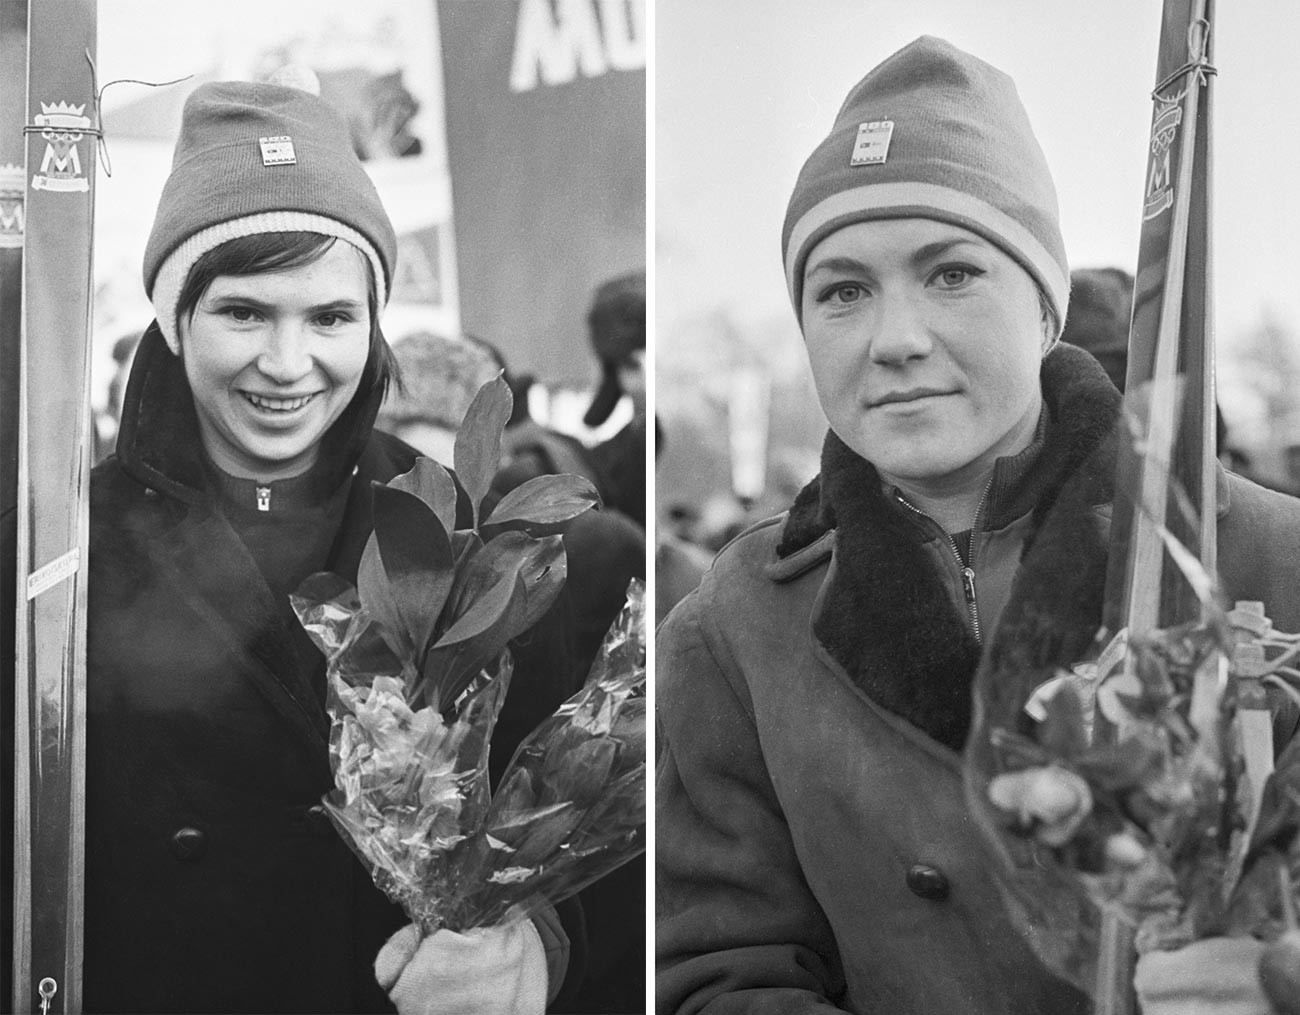 Les sportifs de l'équipe Metelitsa Tatiana Diakonova et Nadejda Kouzina après la traversée à ski de l'itinéraire Moscou-Leningrad-Helsinki-Tornio (2600 km), dédiée au 100e anniversaire de Vladimir Lénine